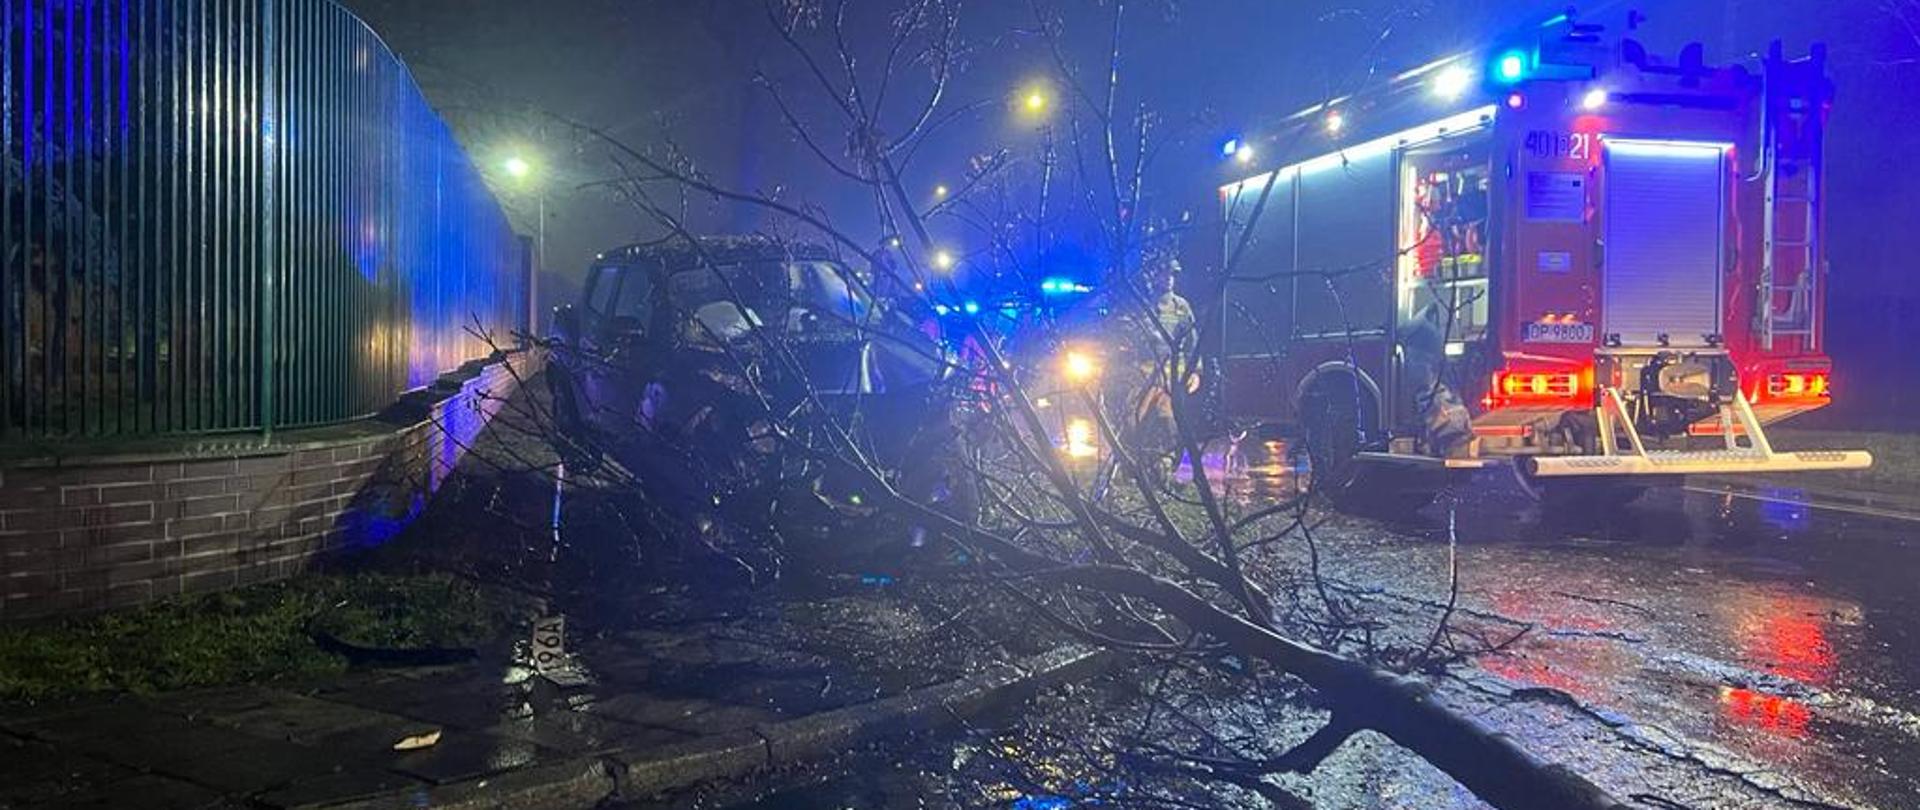 Wpadek śmiertelny z udziałem samochodu osobowego przy ul. Sikorskiego w Brzegu - zdjęcie przedstawia samochód osobowy przed którym znajduje się złamane drzewo w które uderzył samochód